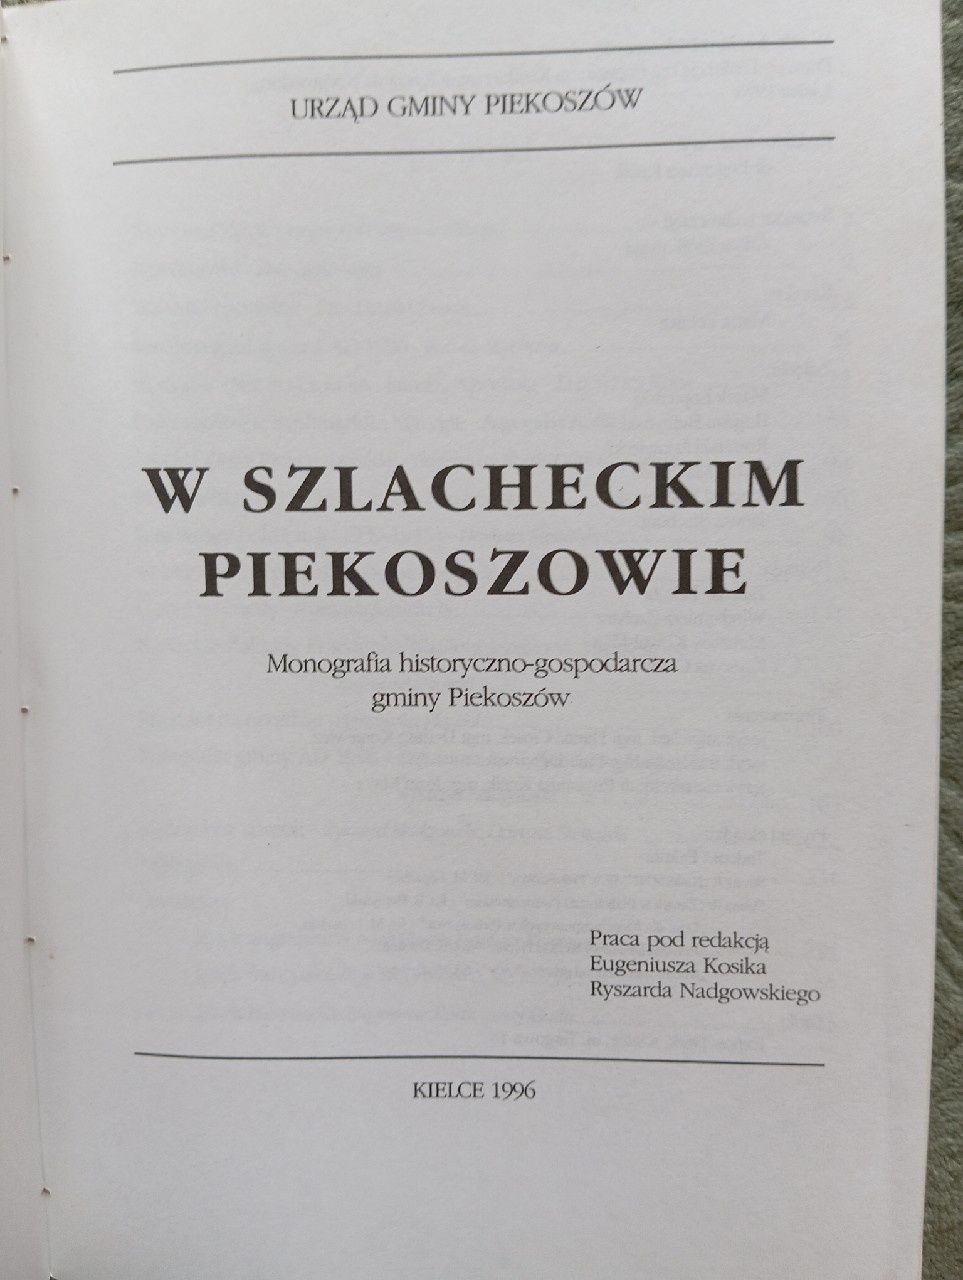 W Szlacheckim Piekoszowie Monografia gminy.